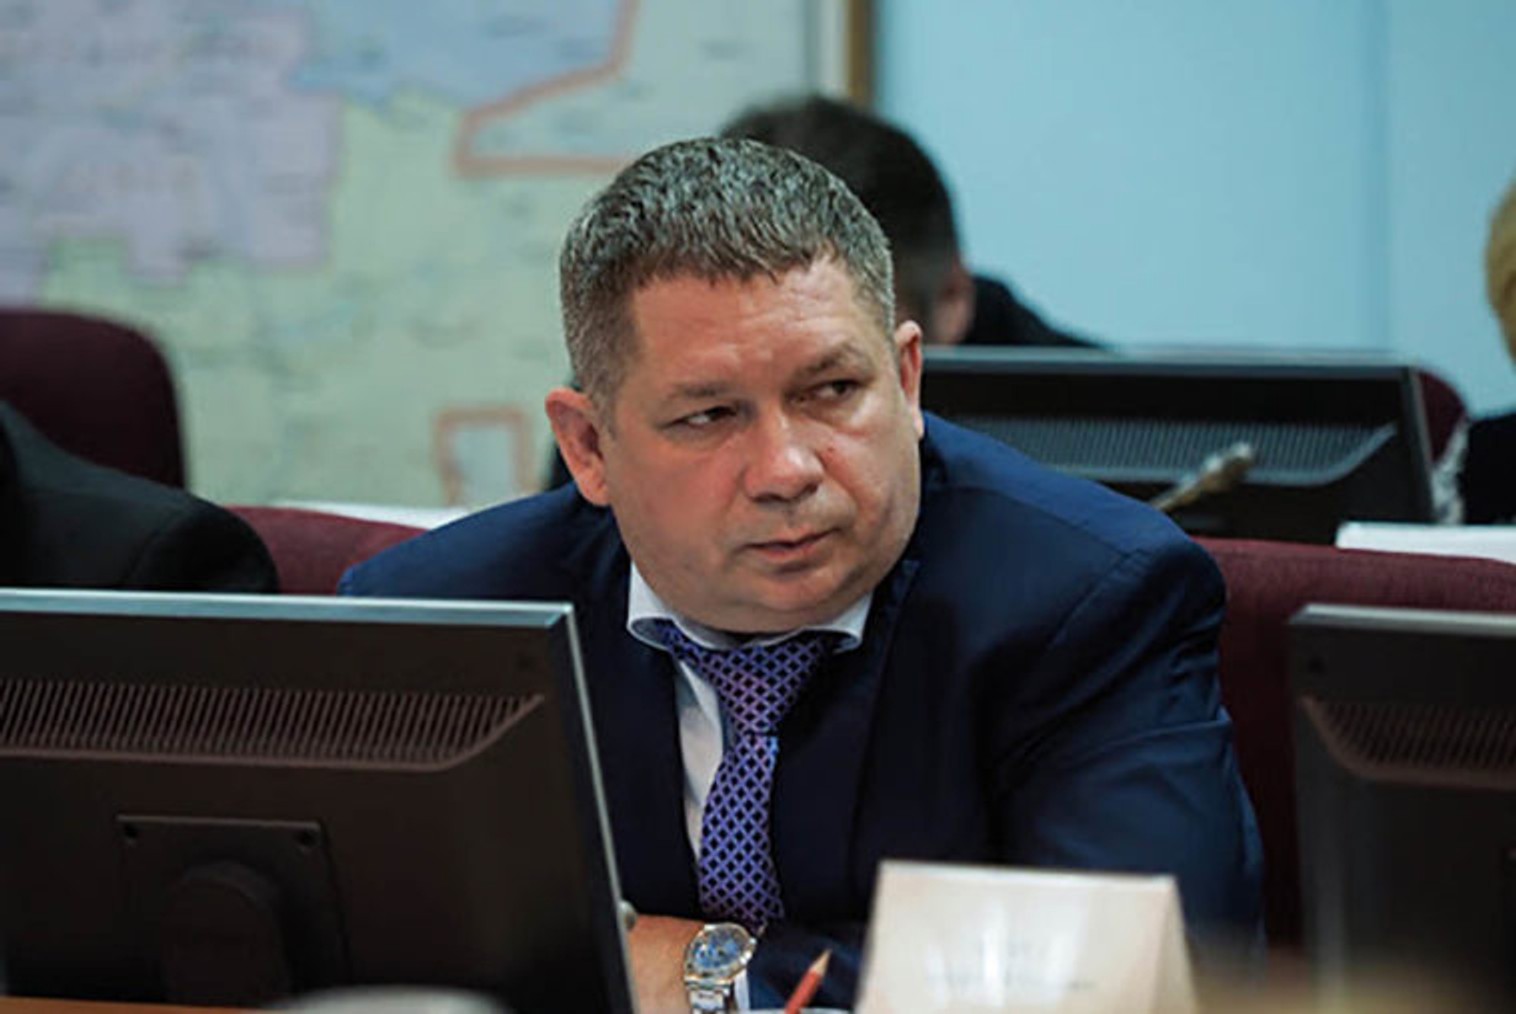 Віце-прем'єр уряду Ставропілля заарештований у справі про хабарі